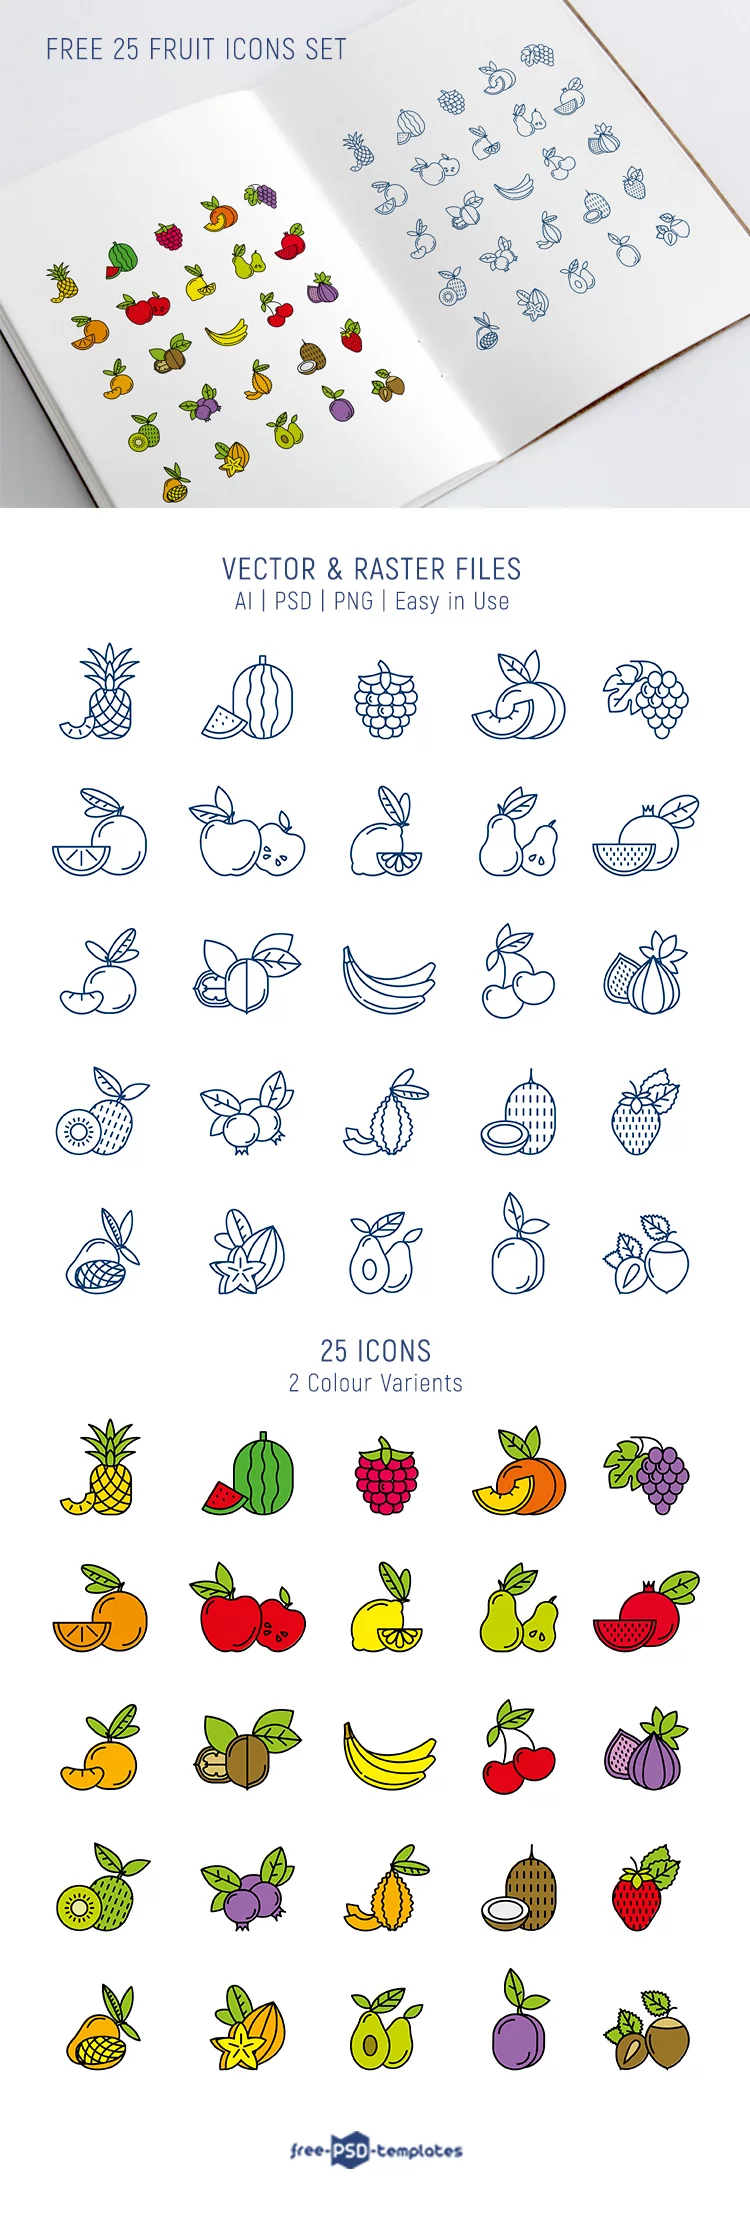 Free 25 Fruit Icons Set